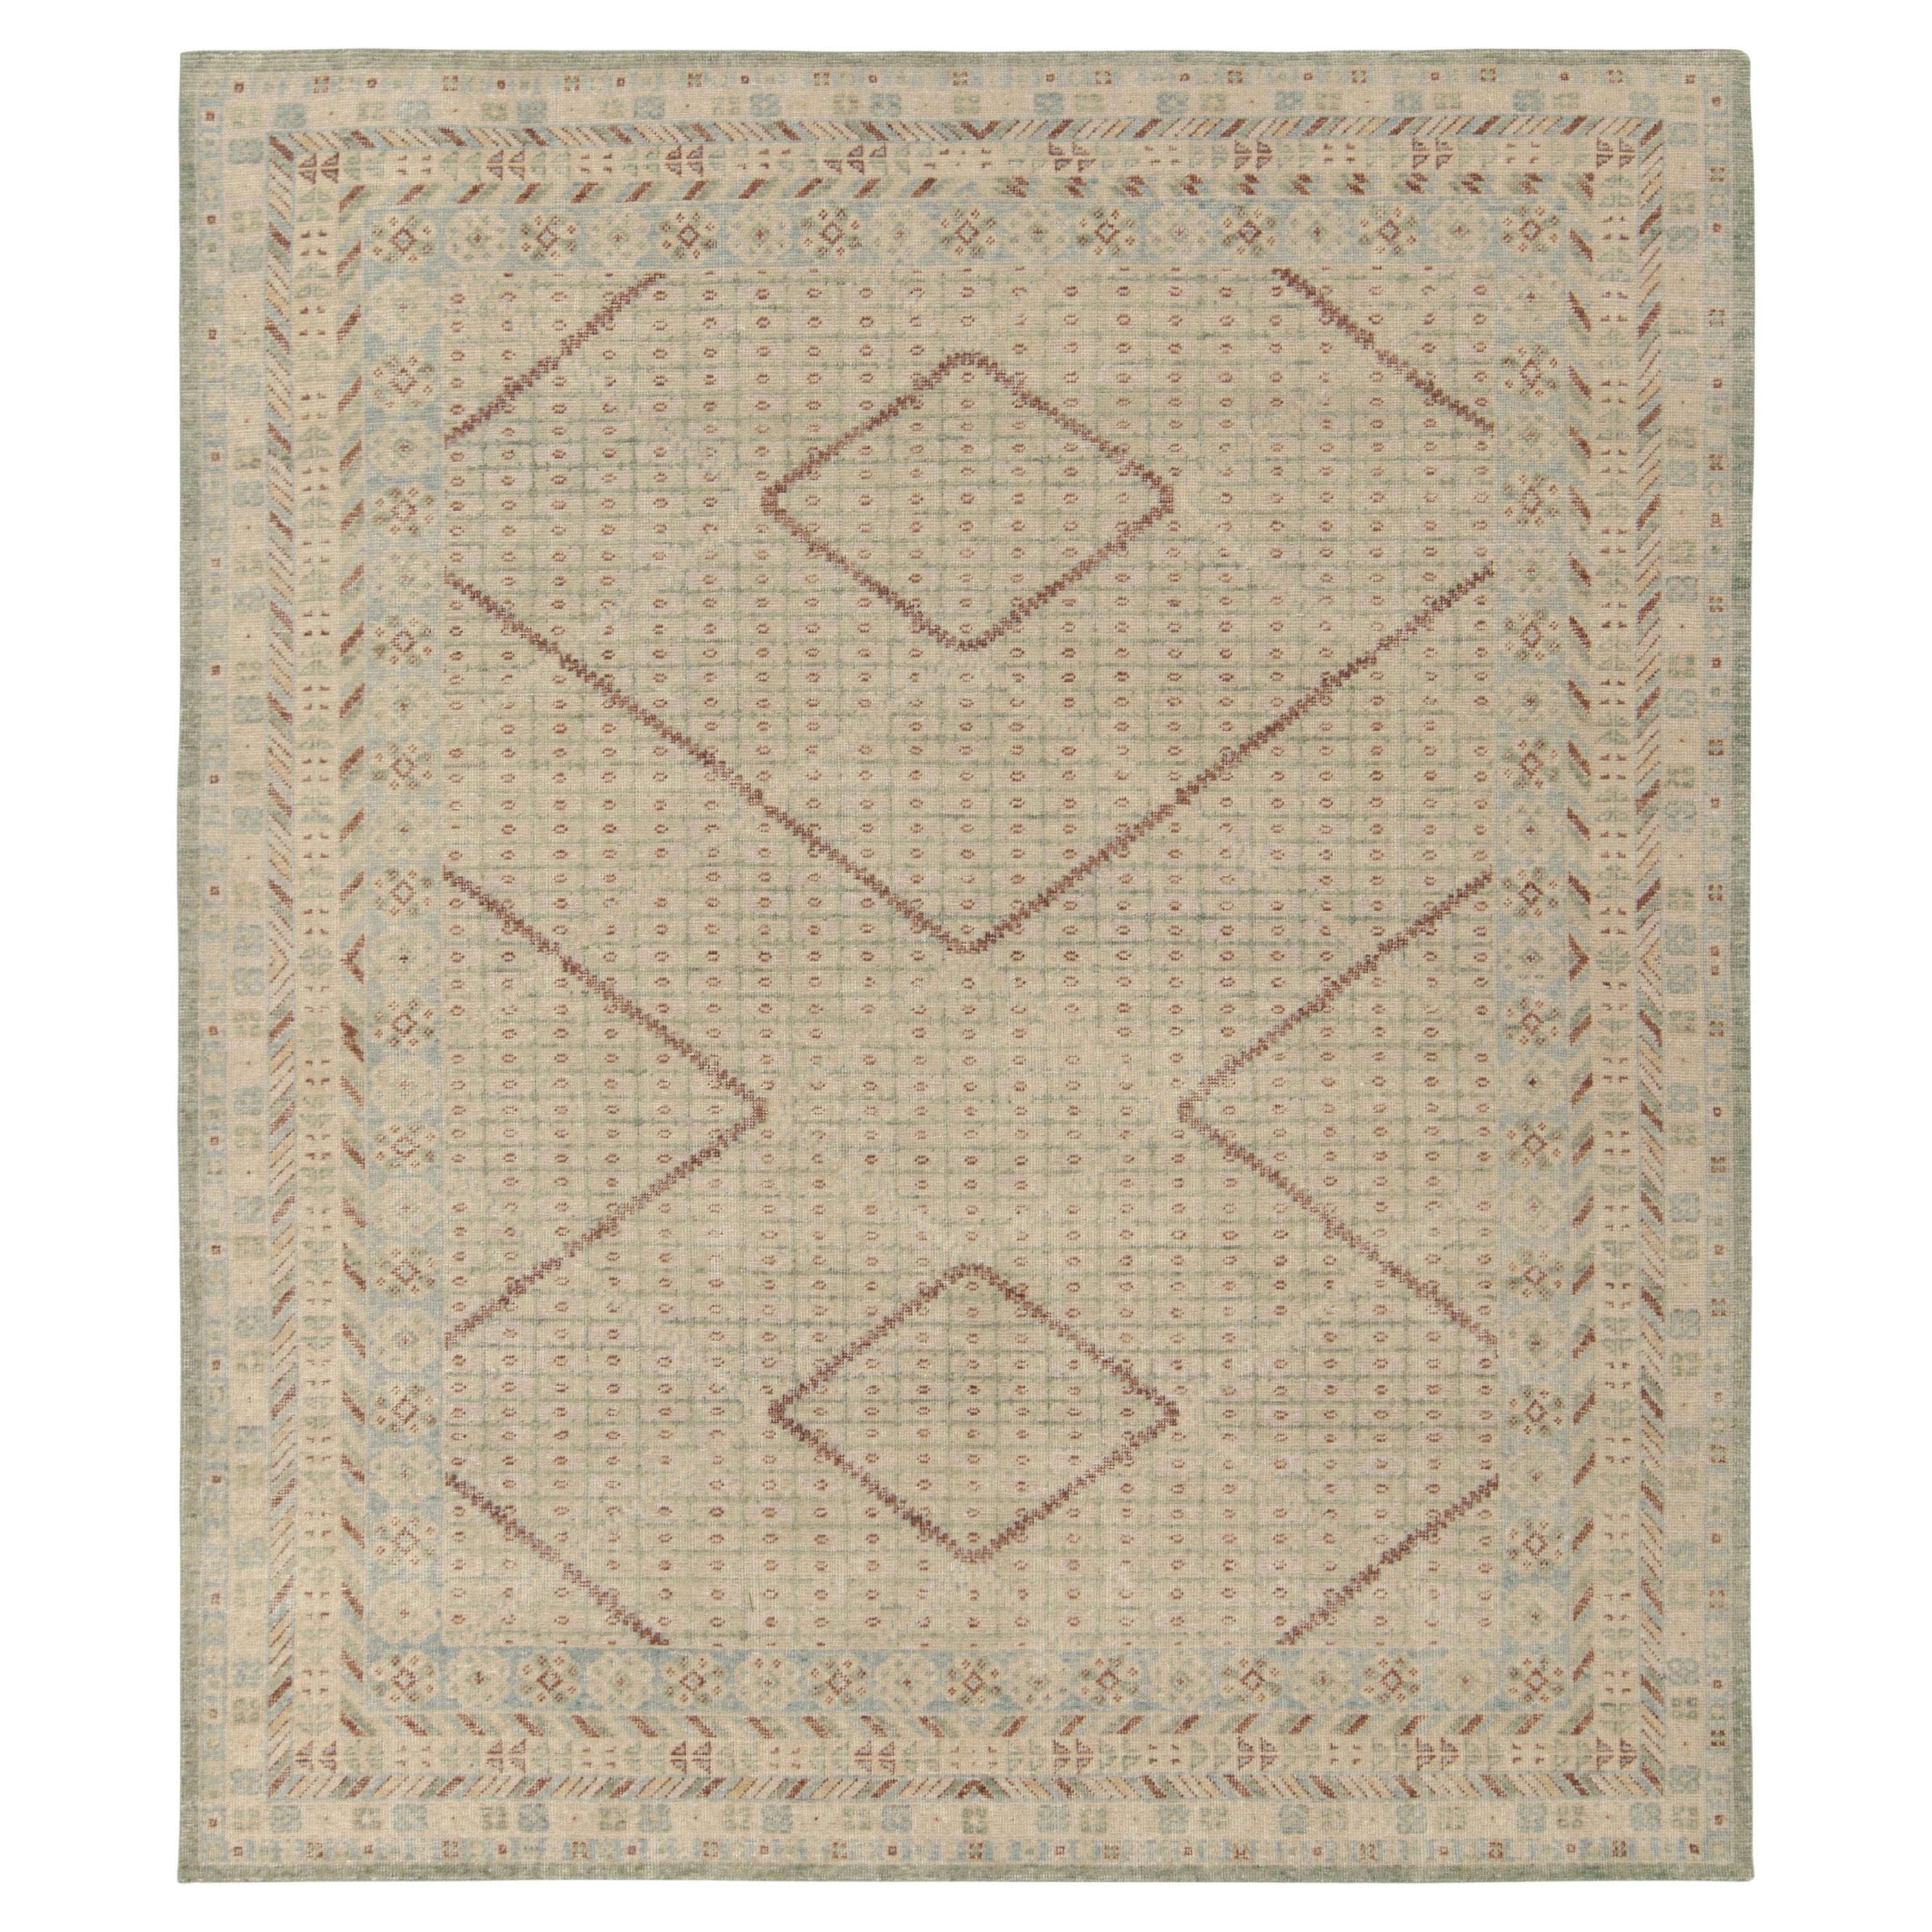 Tapis et tapis Kilim''s de style Khotan en vert beige, motif géométrique bleu